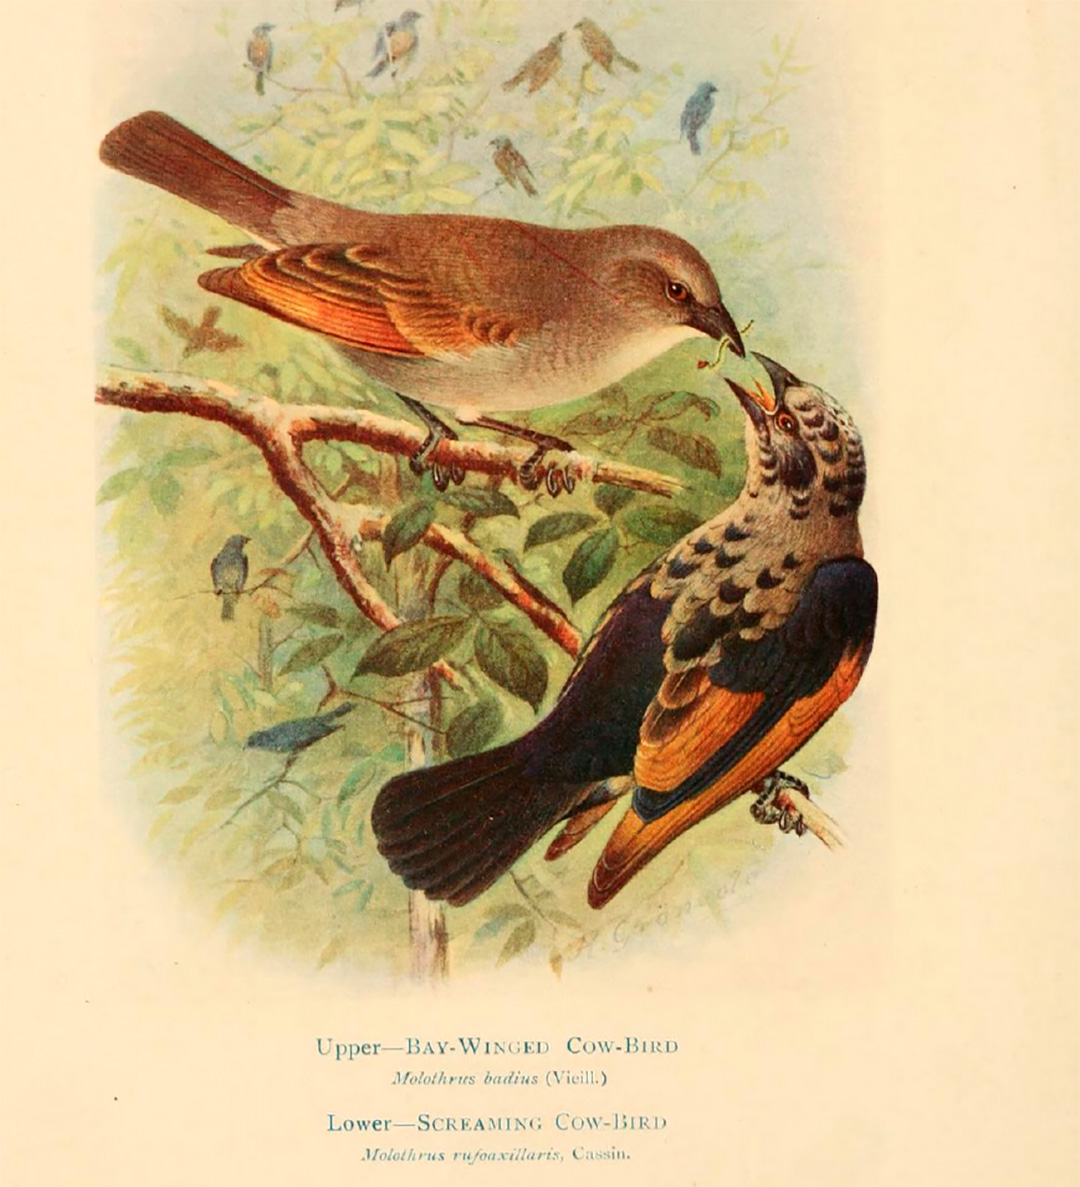 Ilustraciones de Henrik Gronvold en la primera edición de "Bird of La Plata" (1920), de G. E. Hudson